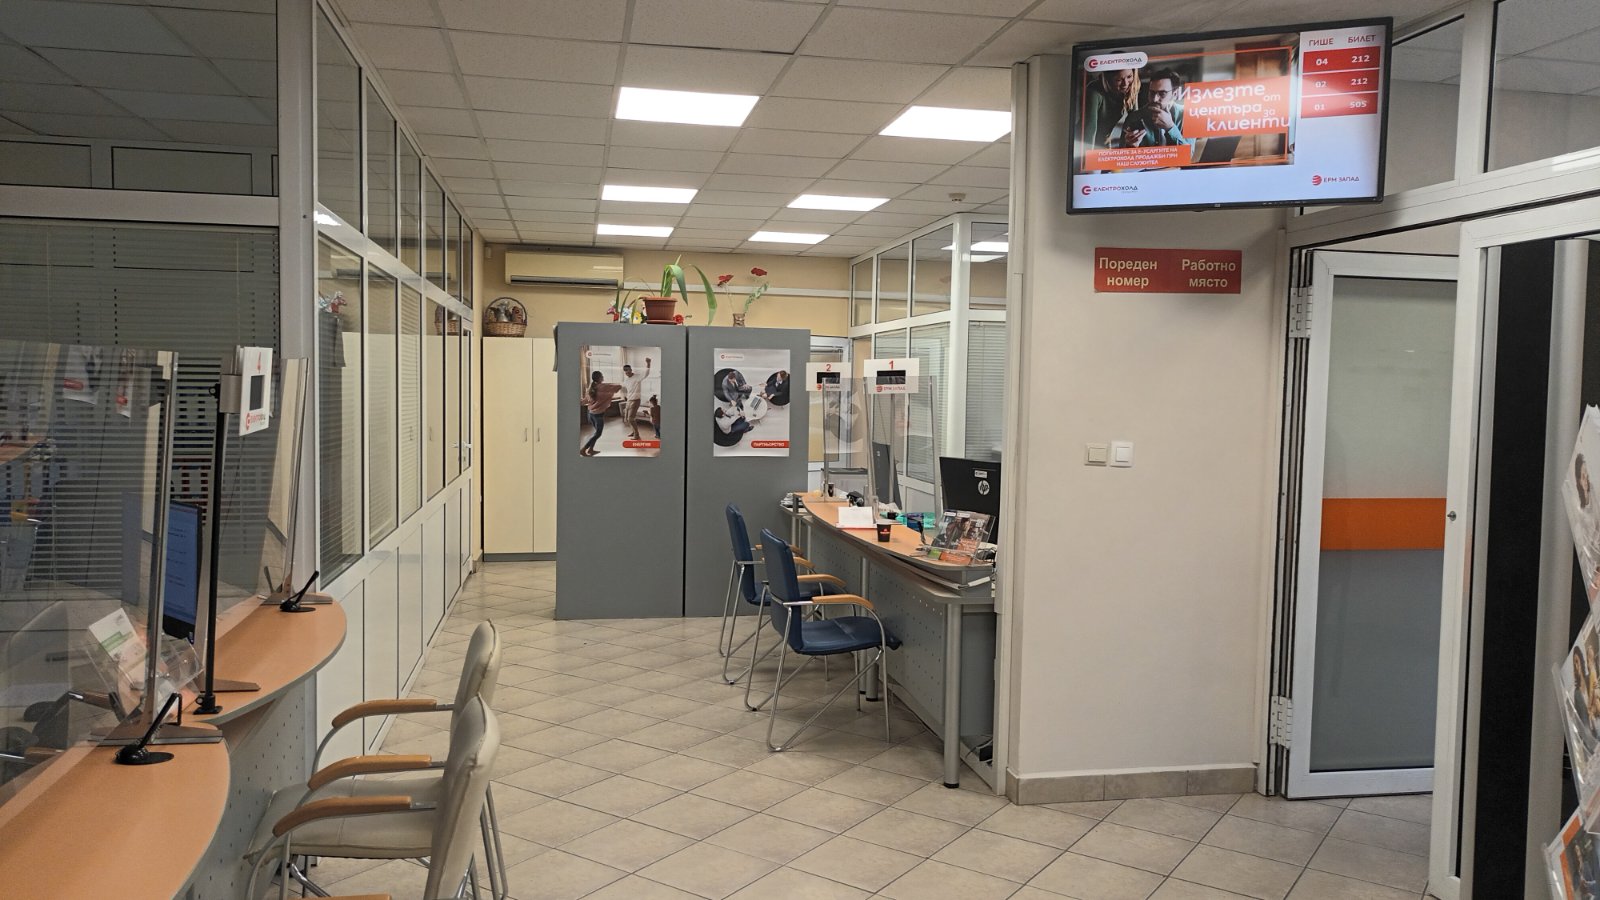 Електрохолд България отвори ребрандиран търговски център в ж.к. Хаджи Димитър“,